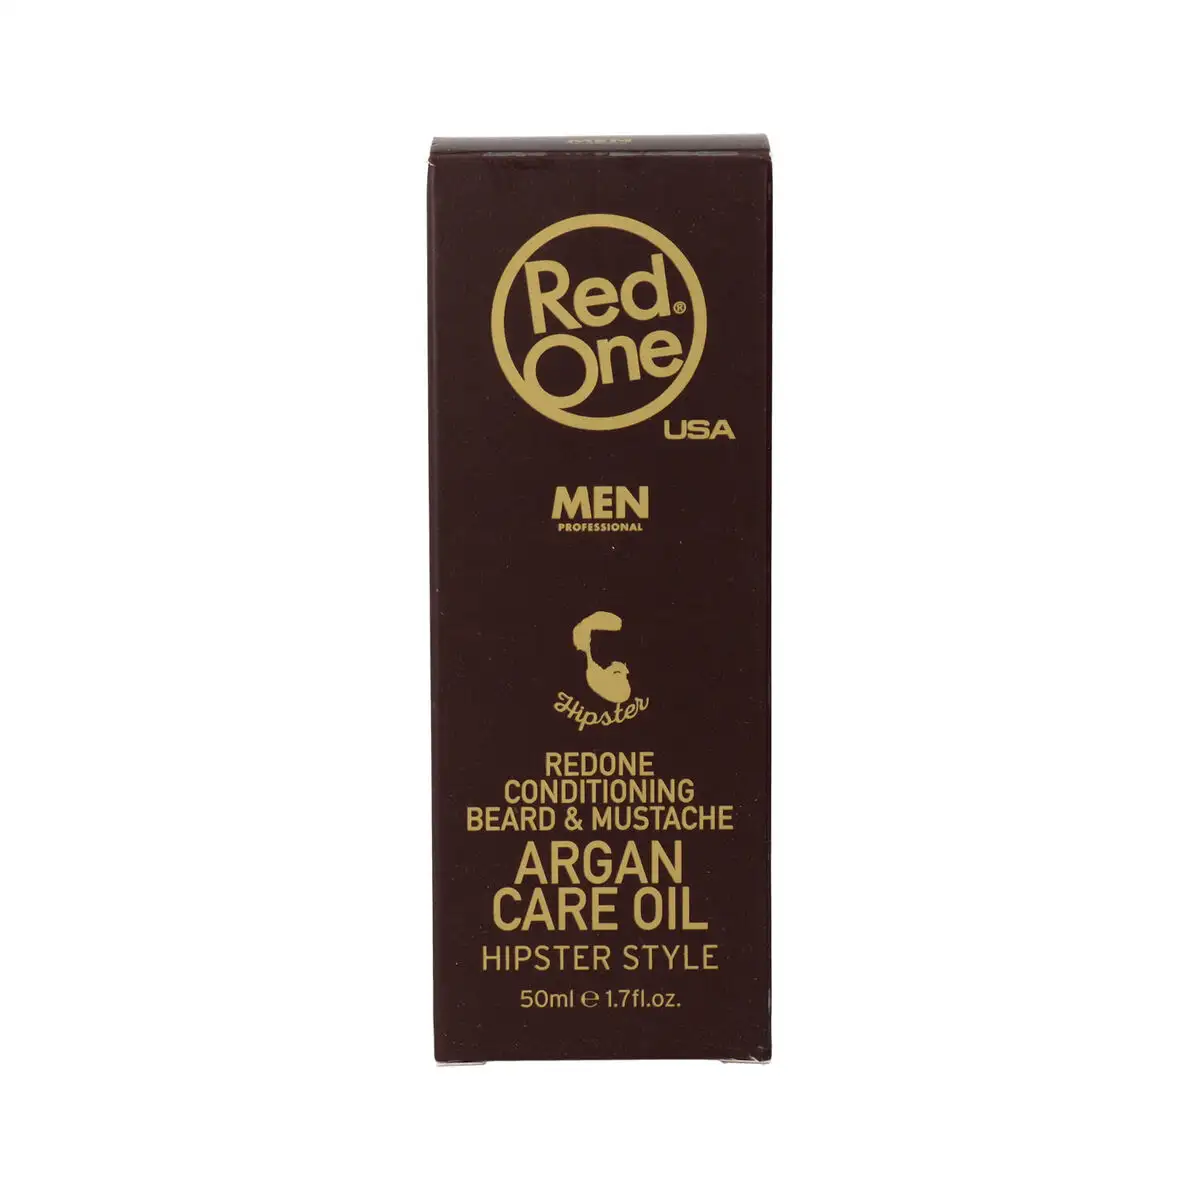 Conditionneur pour barbe red one huile d argan 50 ml _8812. DIAYTAR SENEGAL - Votre Plateforme Shopping de Confiance. Naviguez à travers nos rayons et choisissez des produits fiables qui répondent à vos besoins quotidiens.